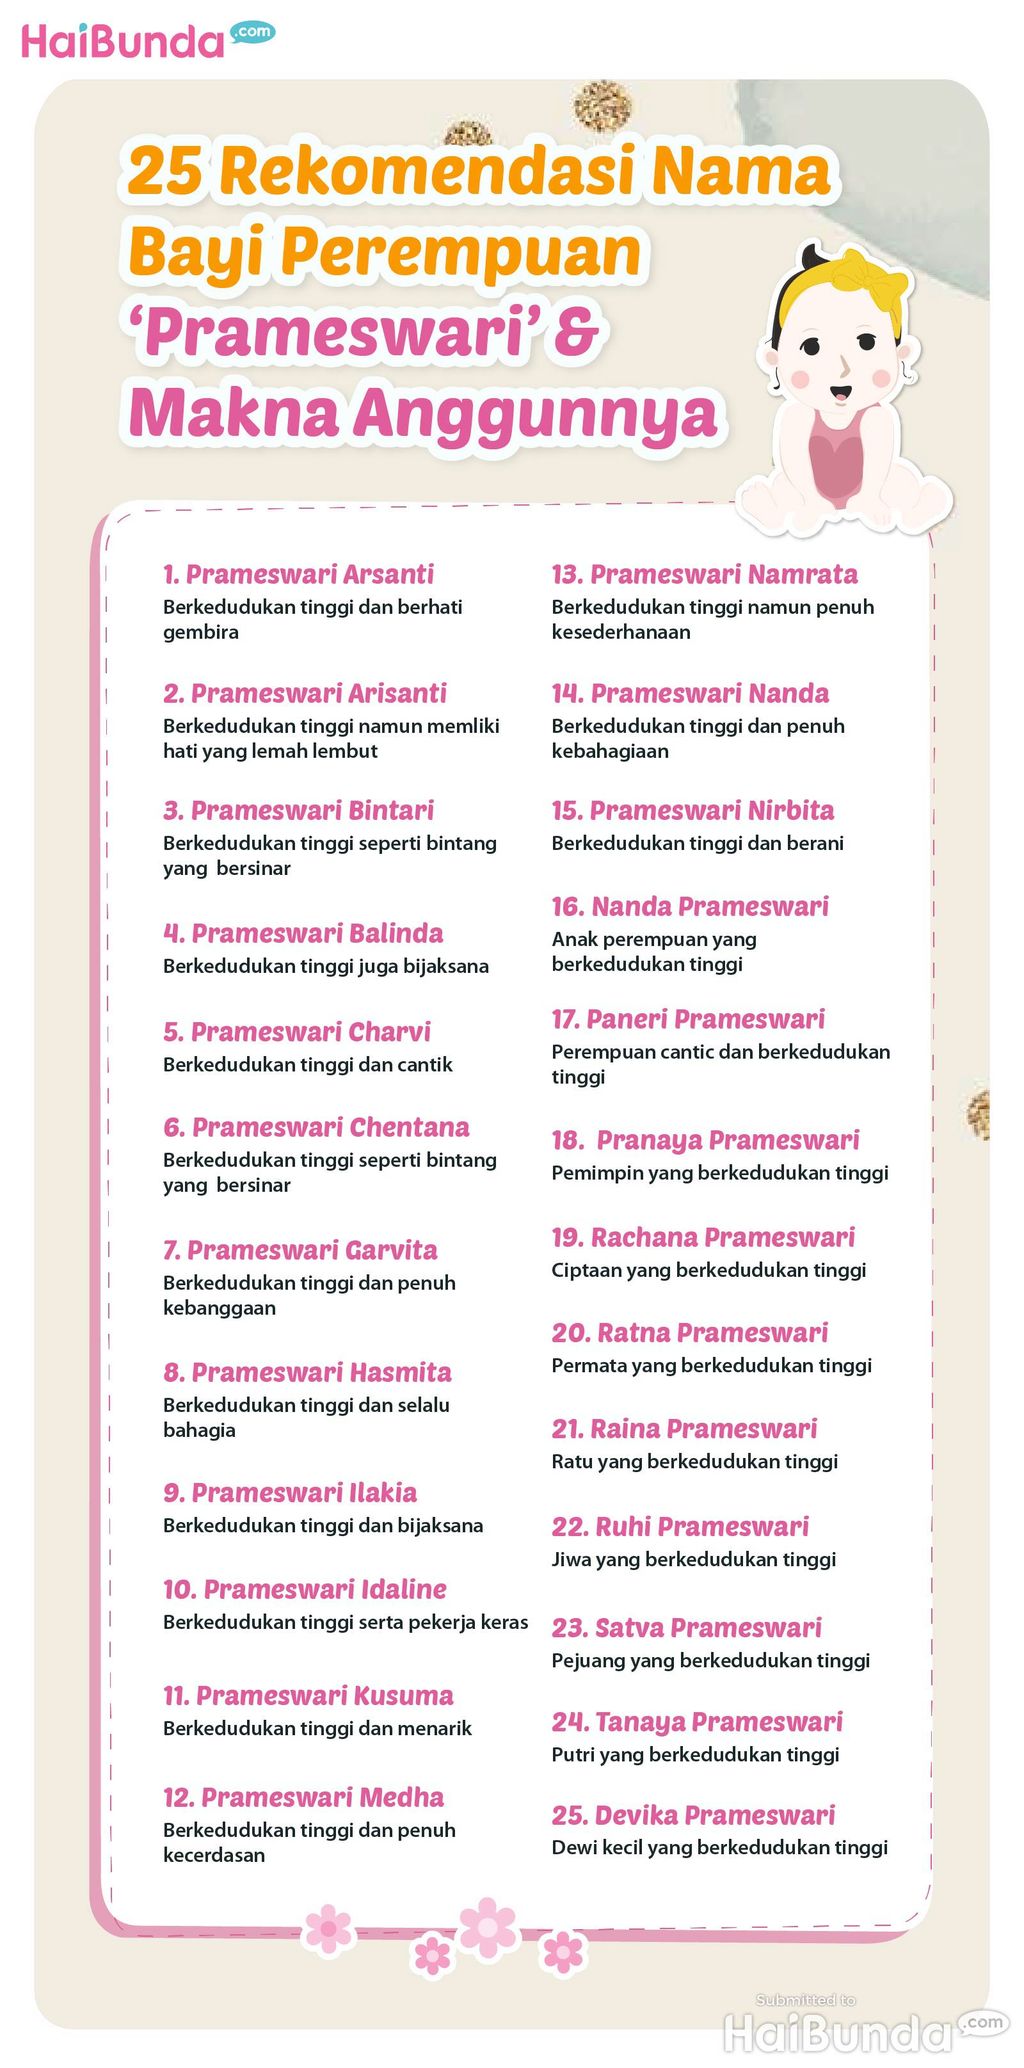 Infografis 25 Rekomendasi Nama Bayi Perempuan 'Prameswari' & Makna Anggunnya